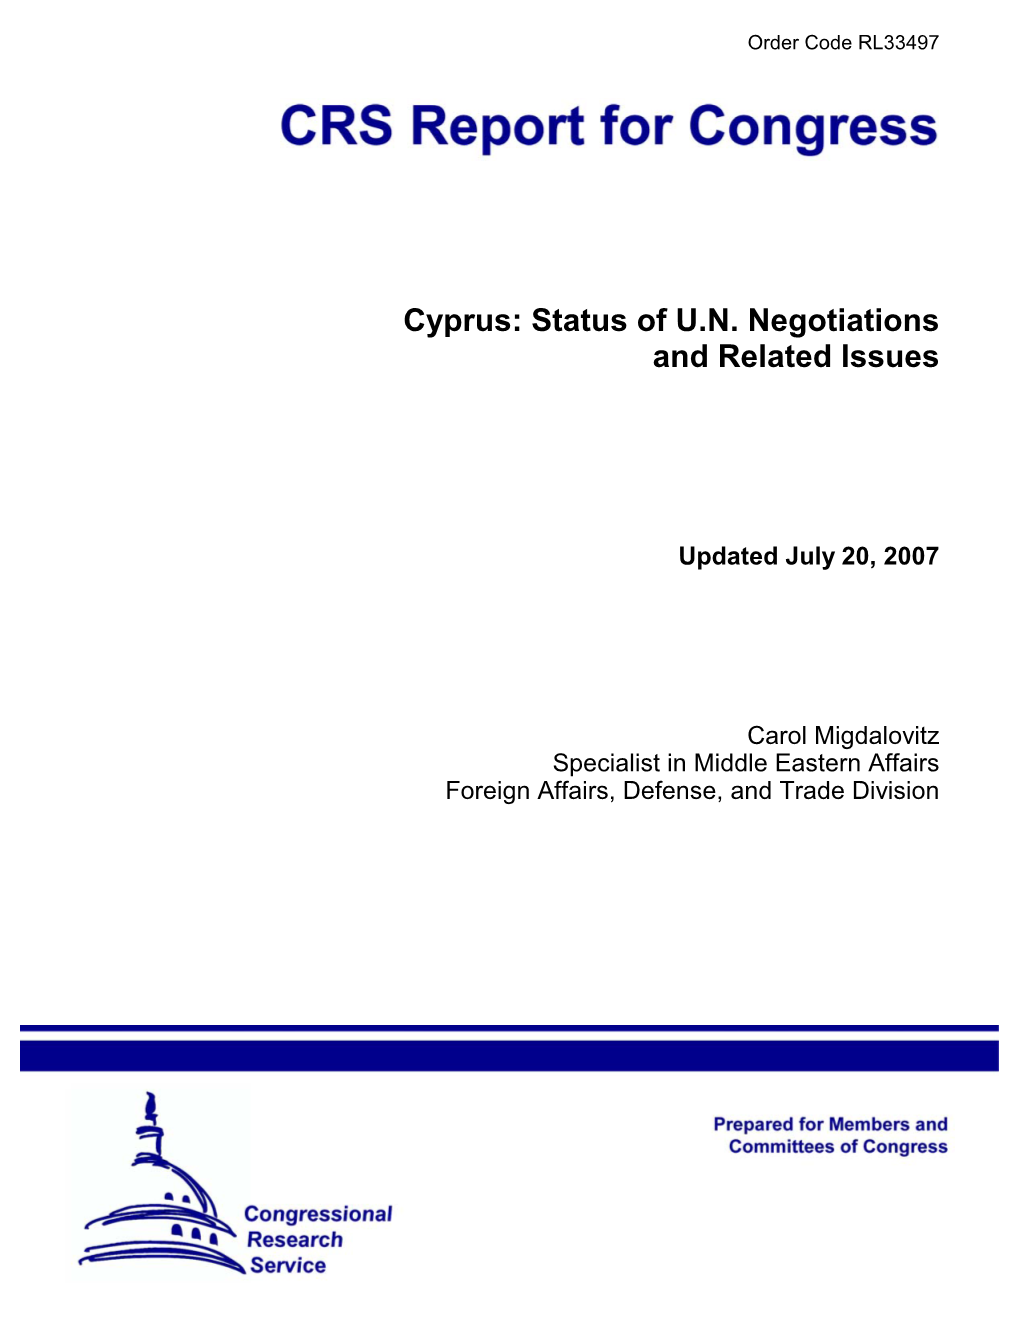 Cyprus: Status of U.N